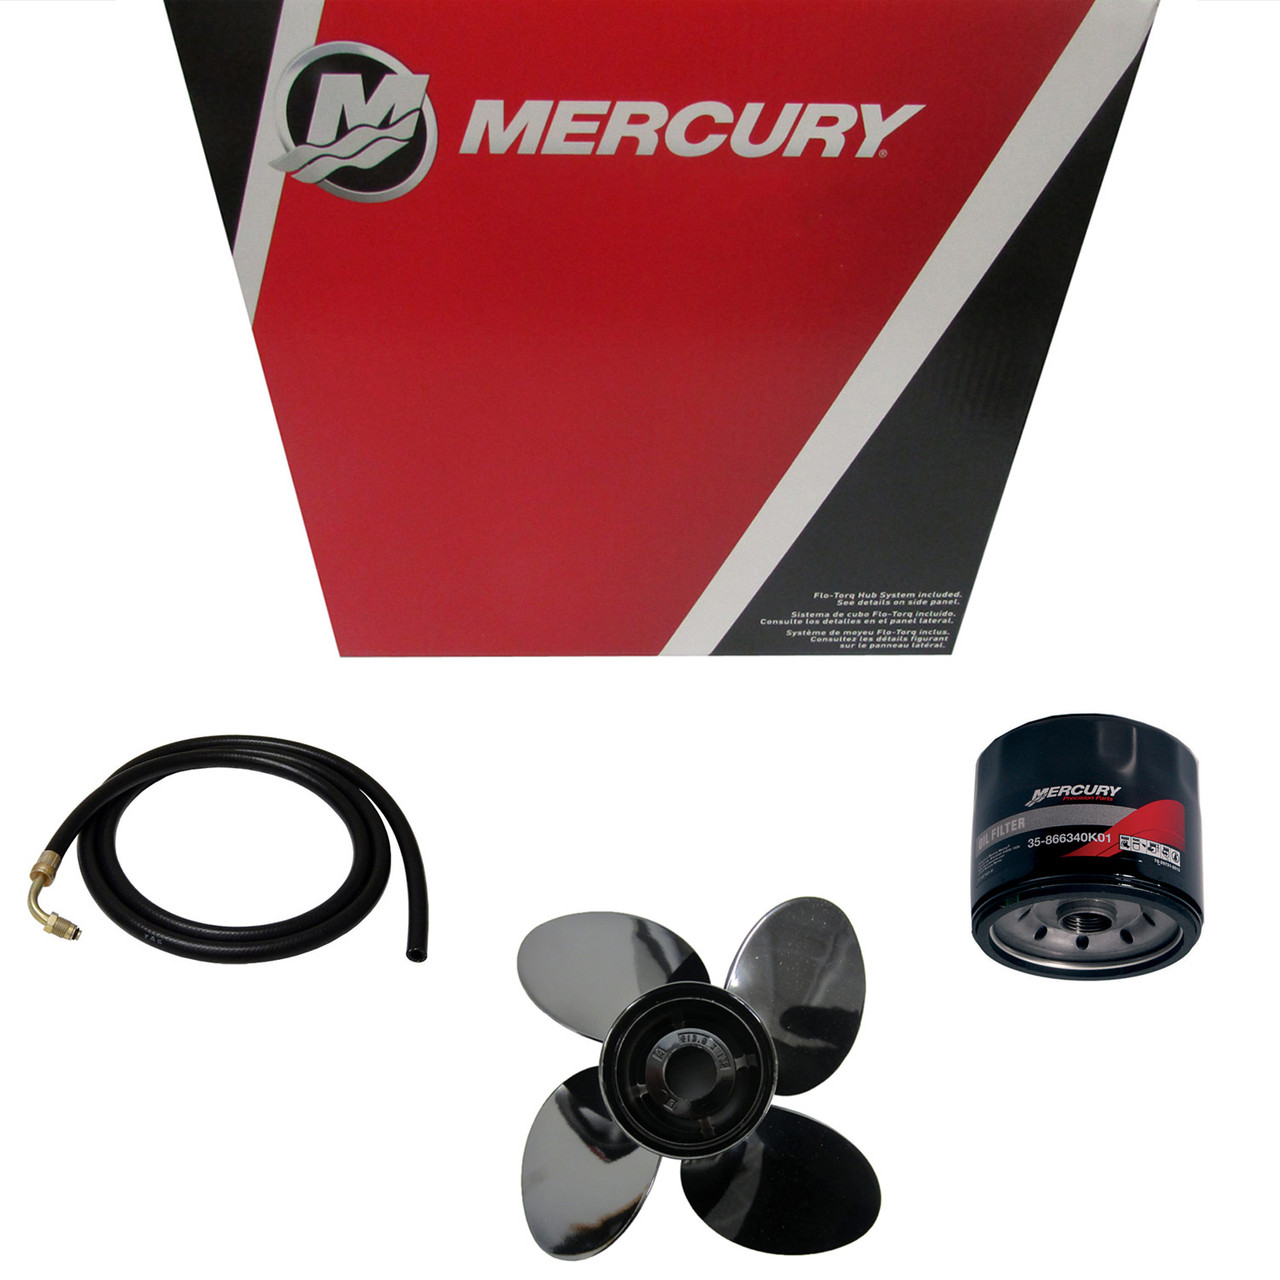 Mercury Marine / Mercruiser New OEM Key 5, 28-8M0032838